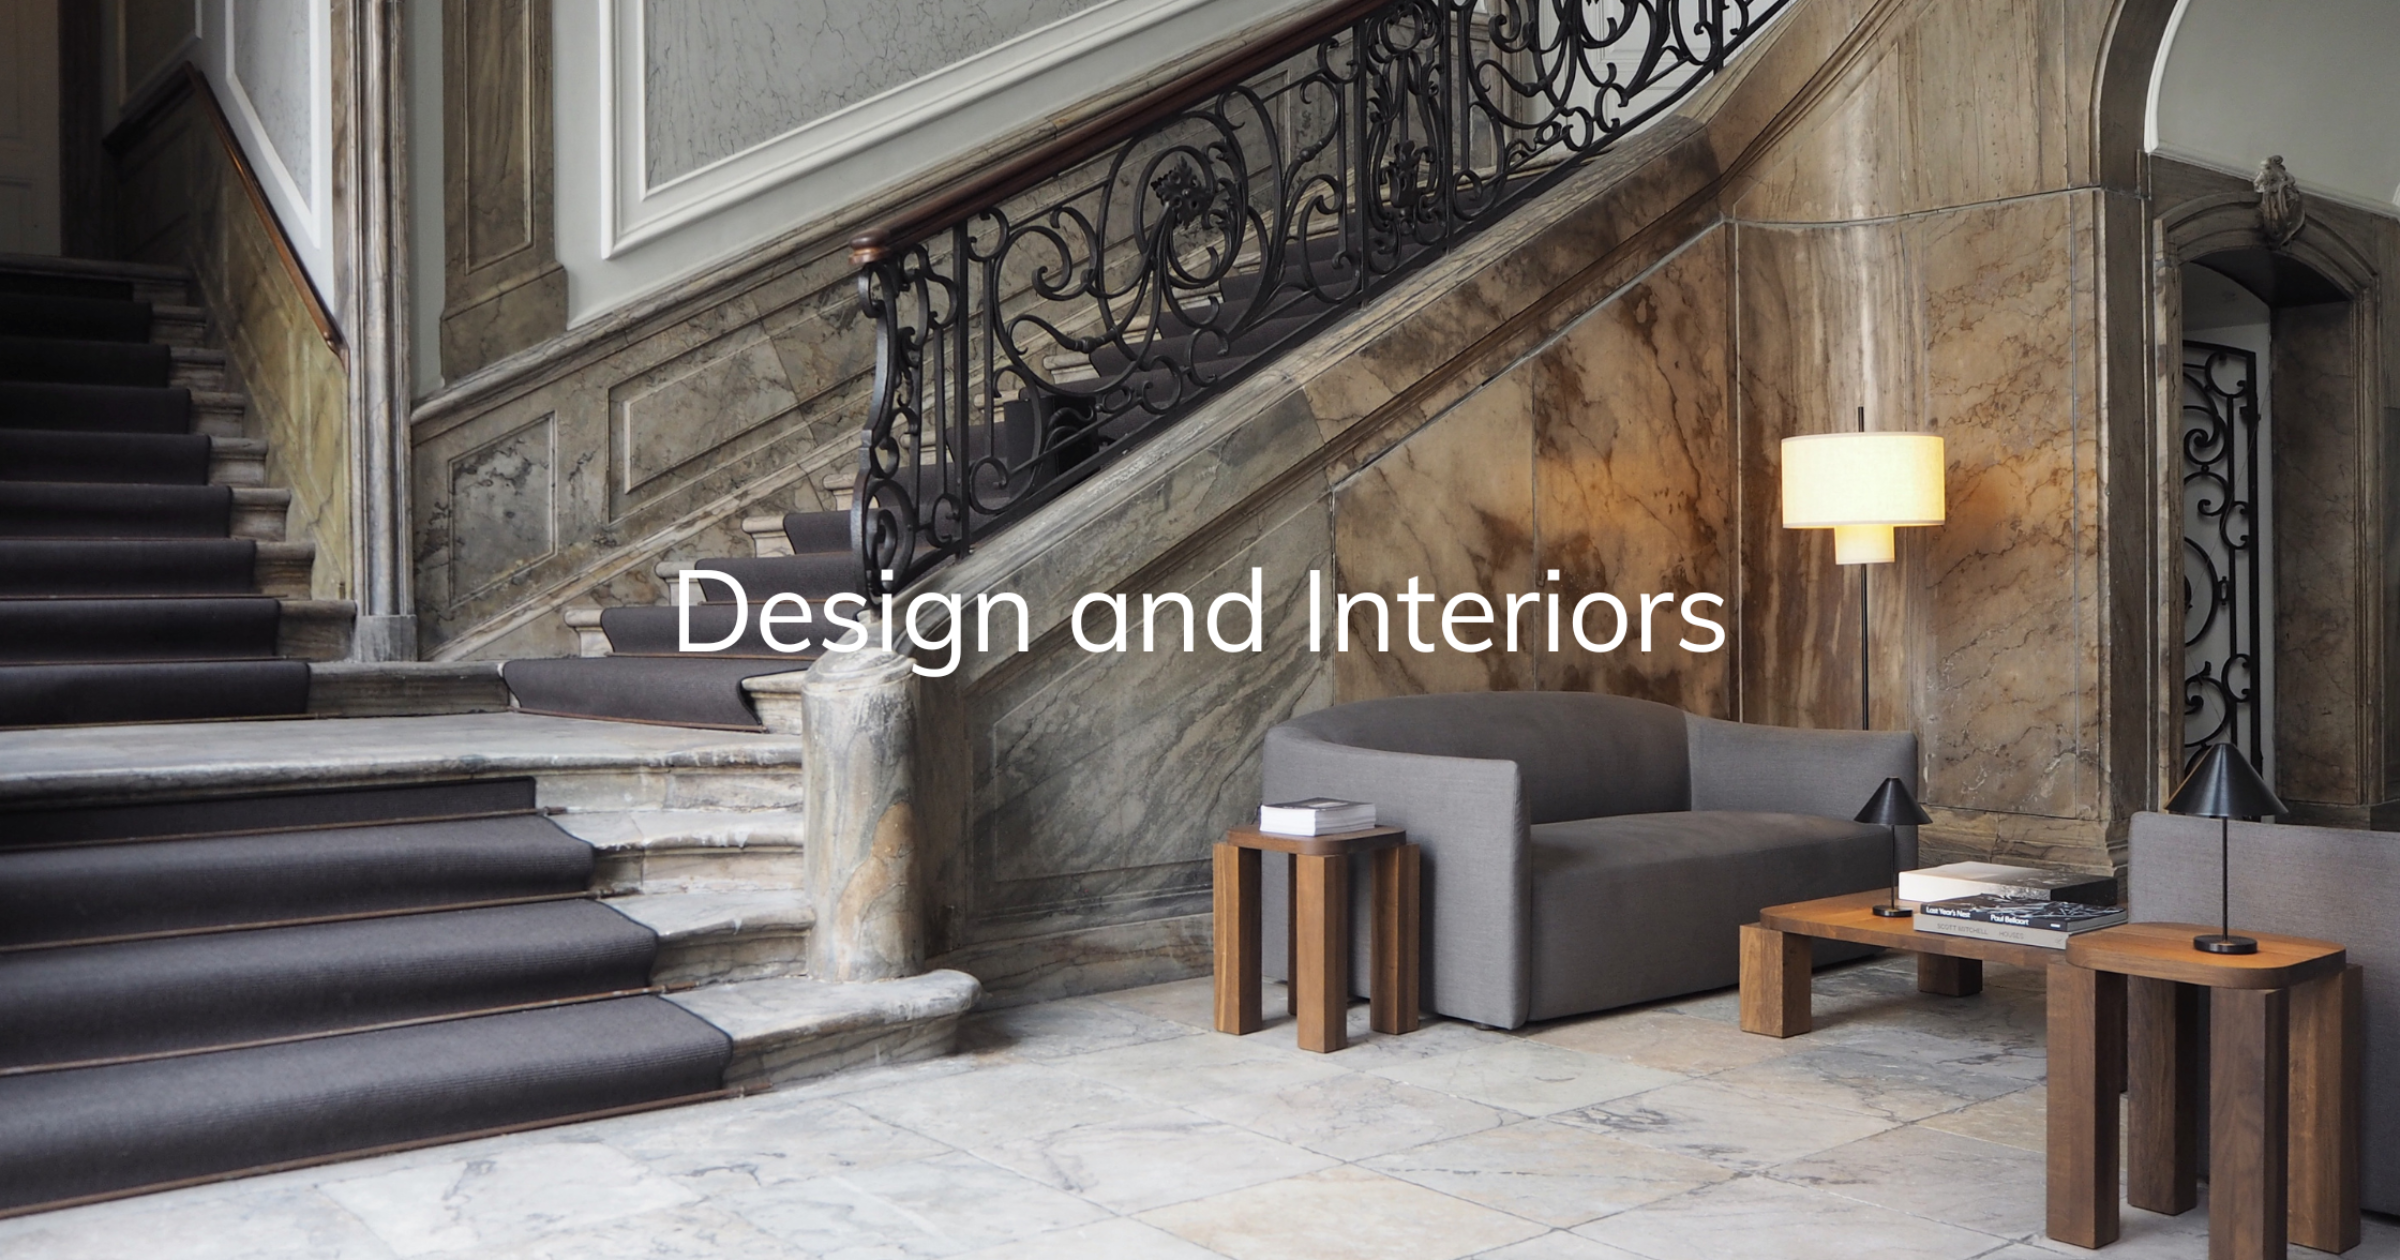 Design and Interiors